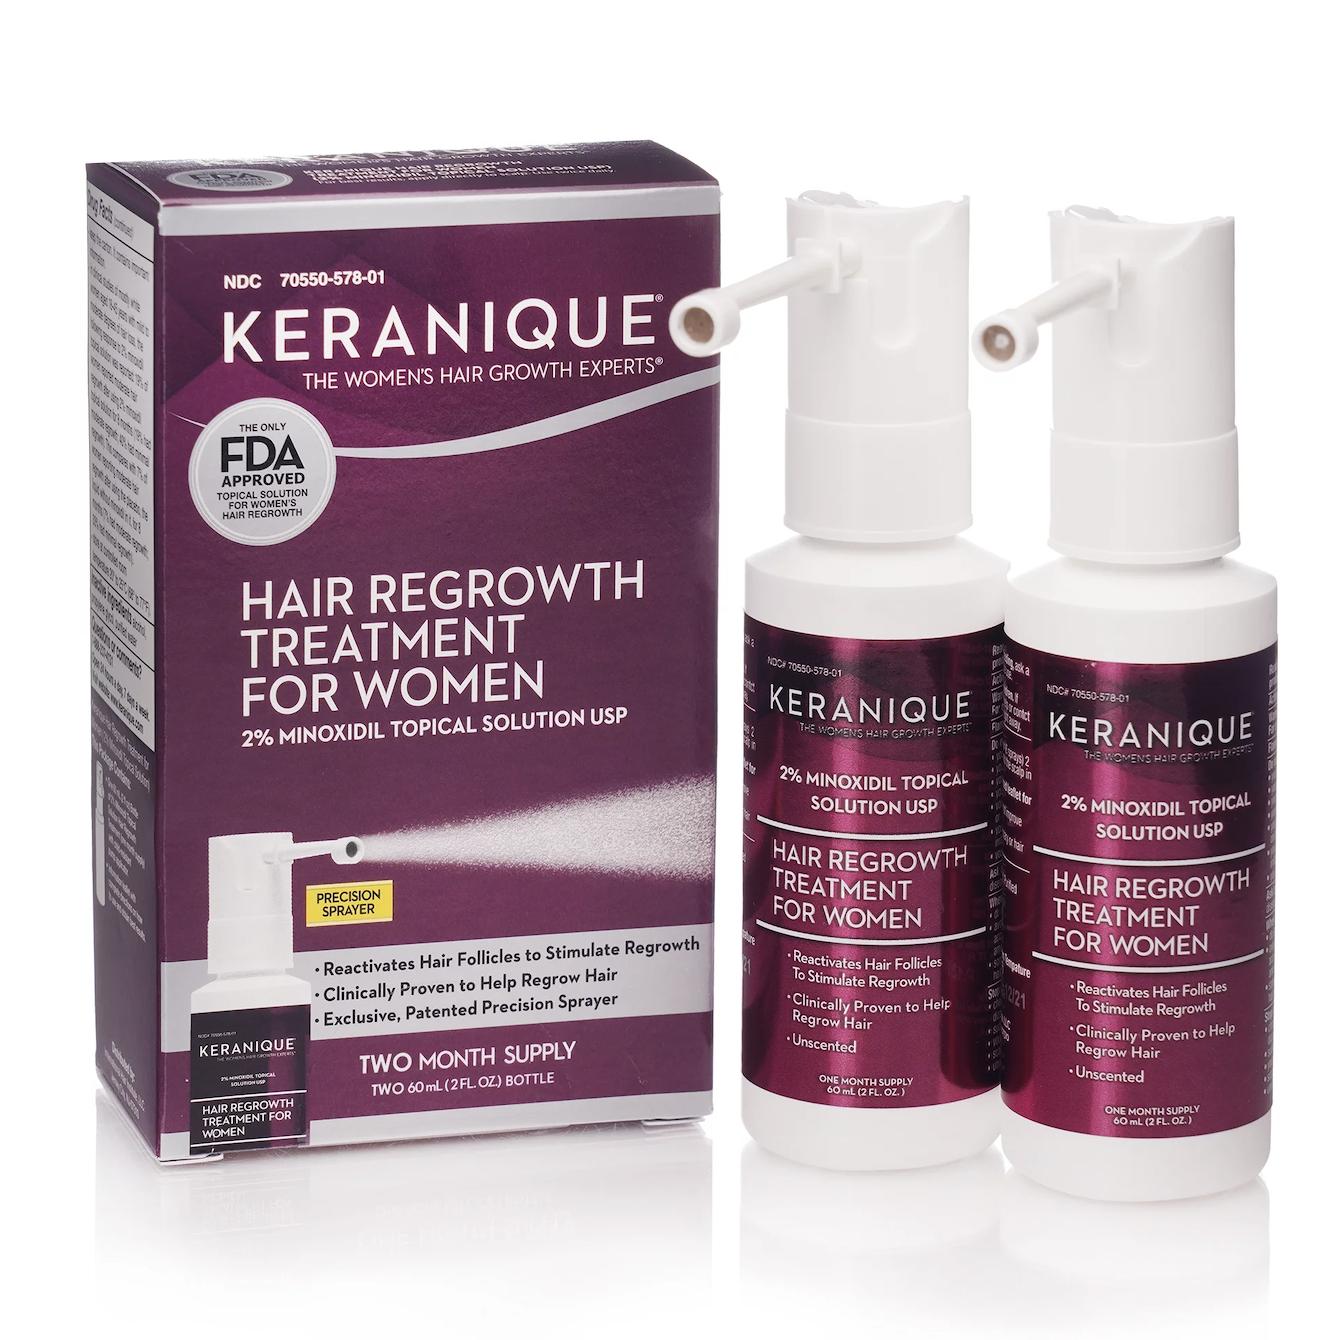 hair growth product: karanique hair regrowth treatment